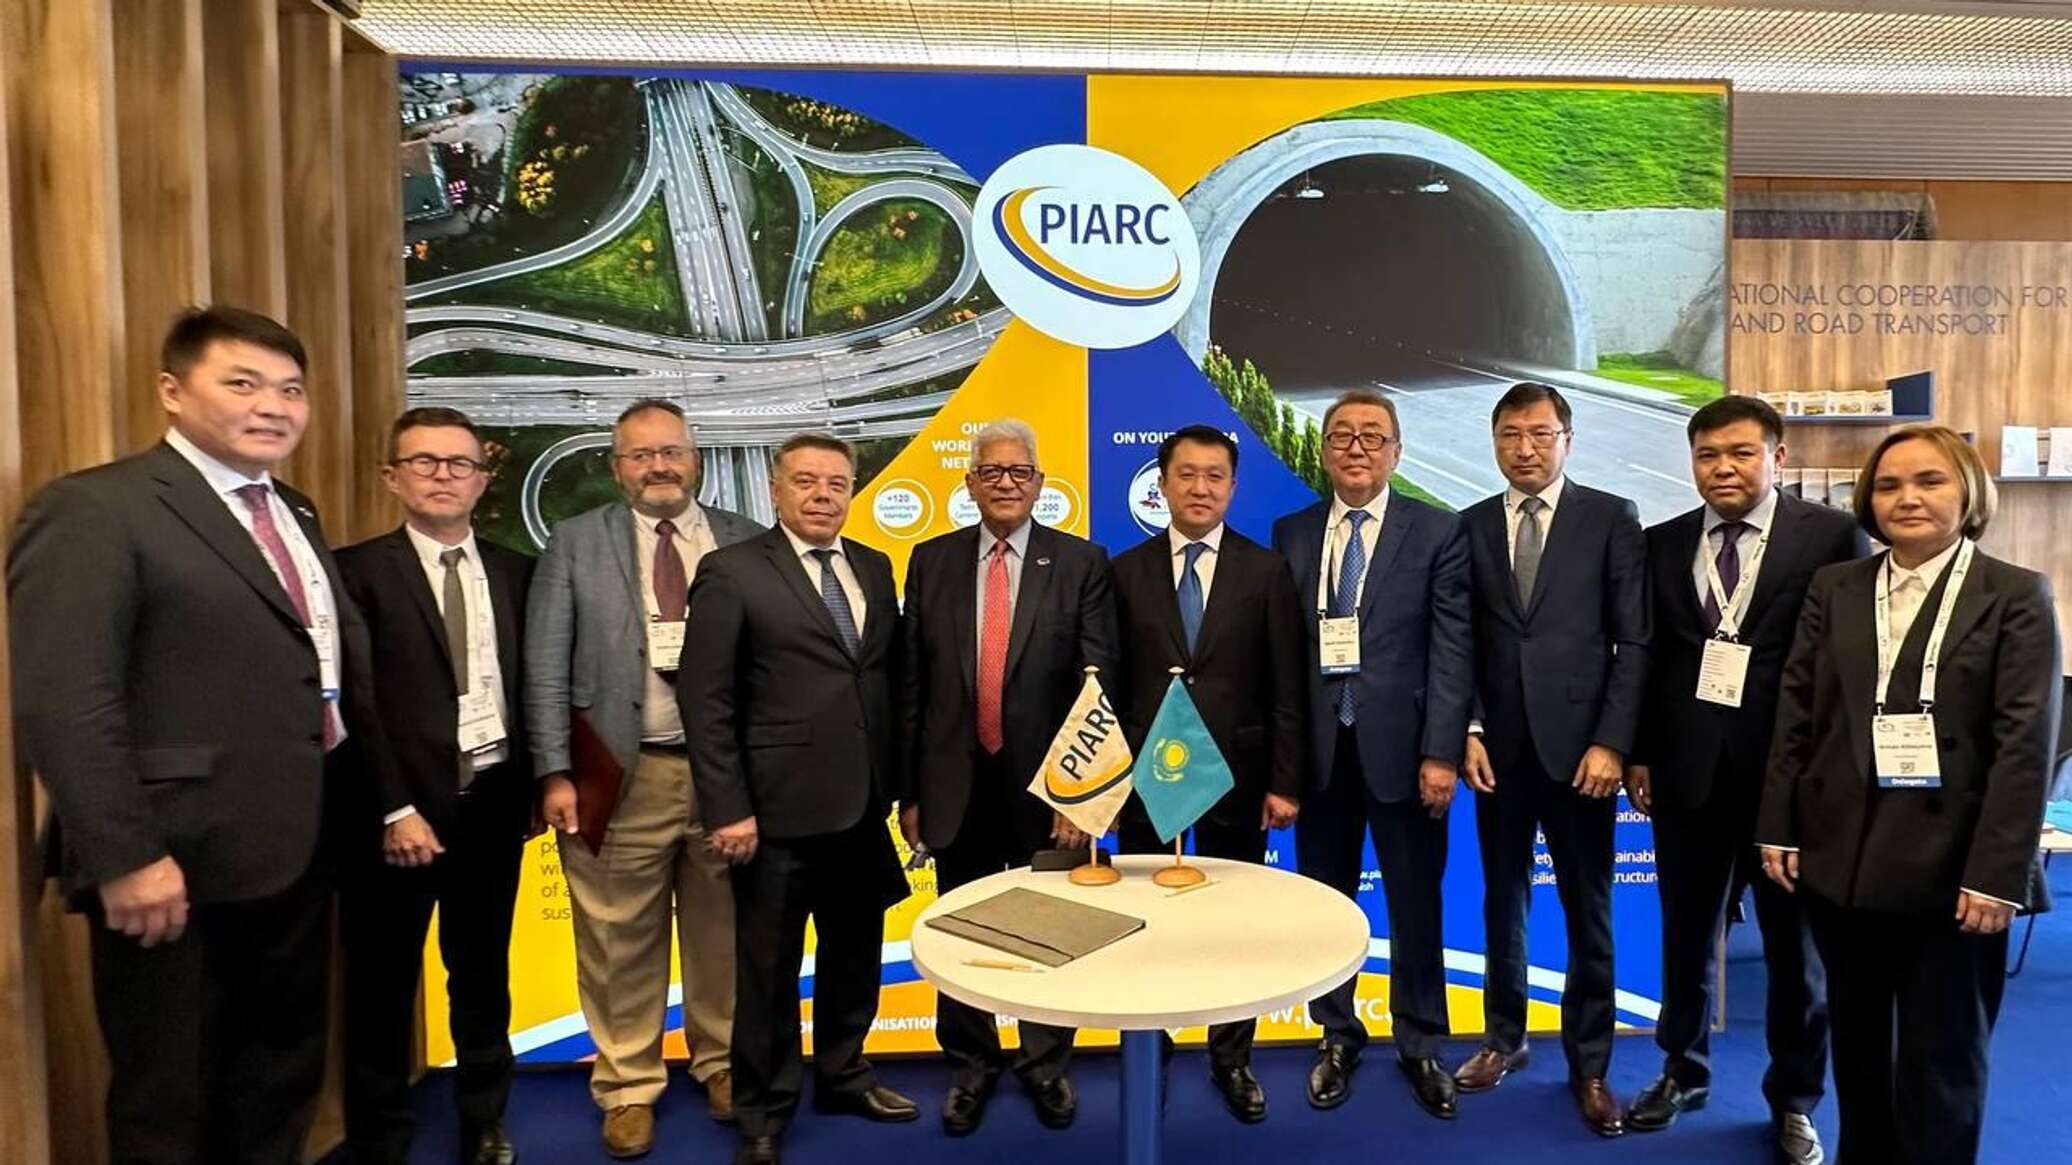 Казахстан стал членом Всемирной дорожной ассоциации